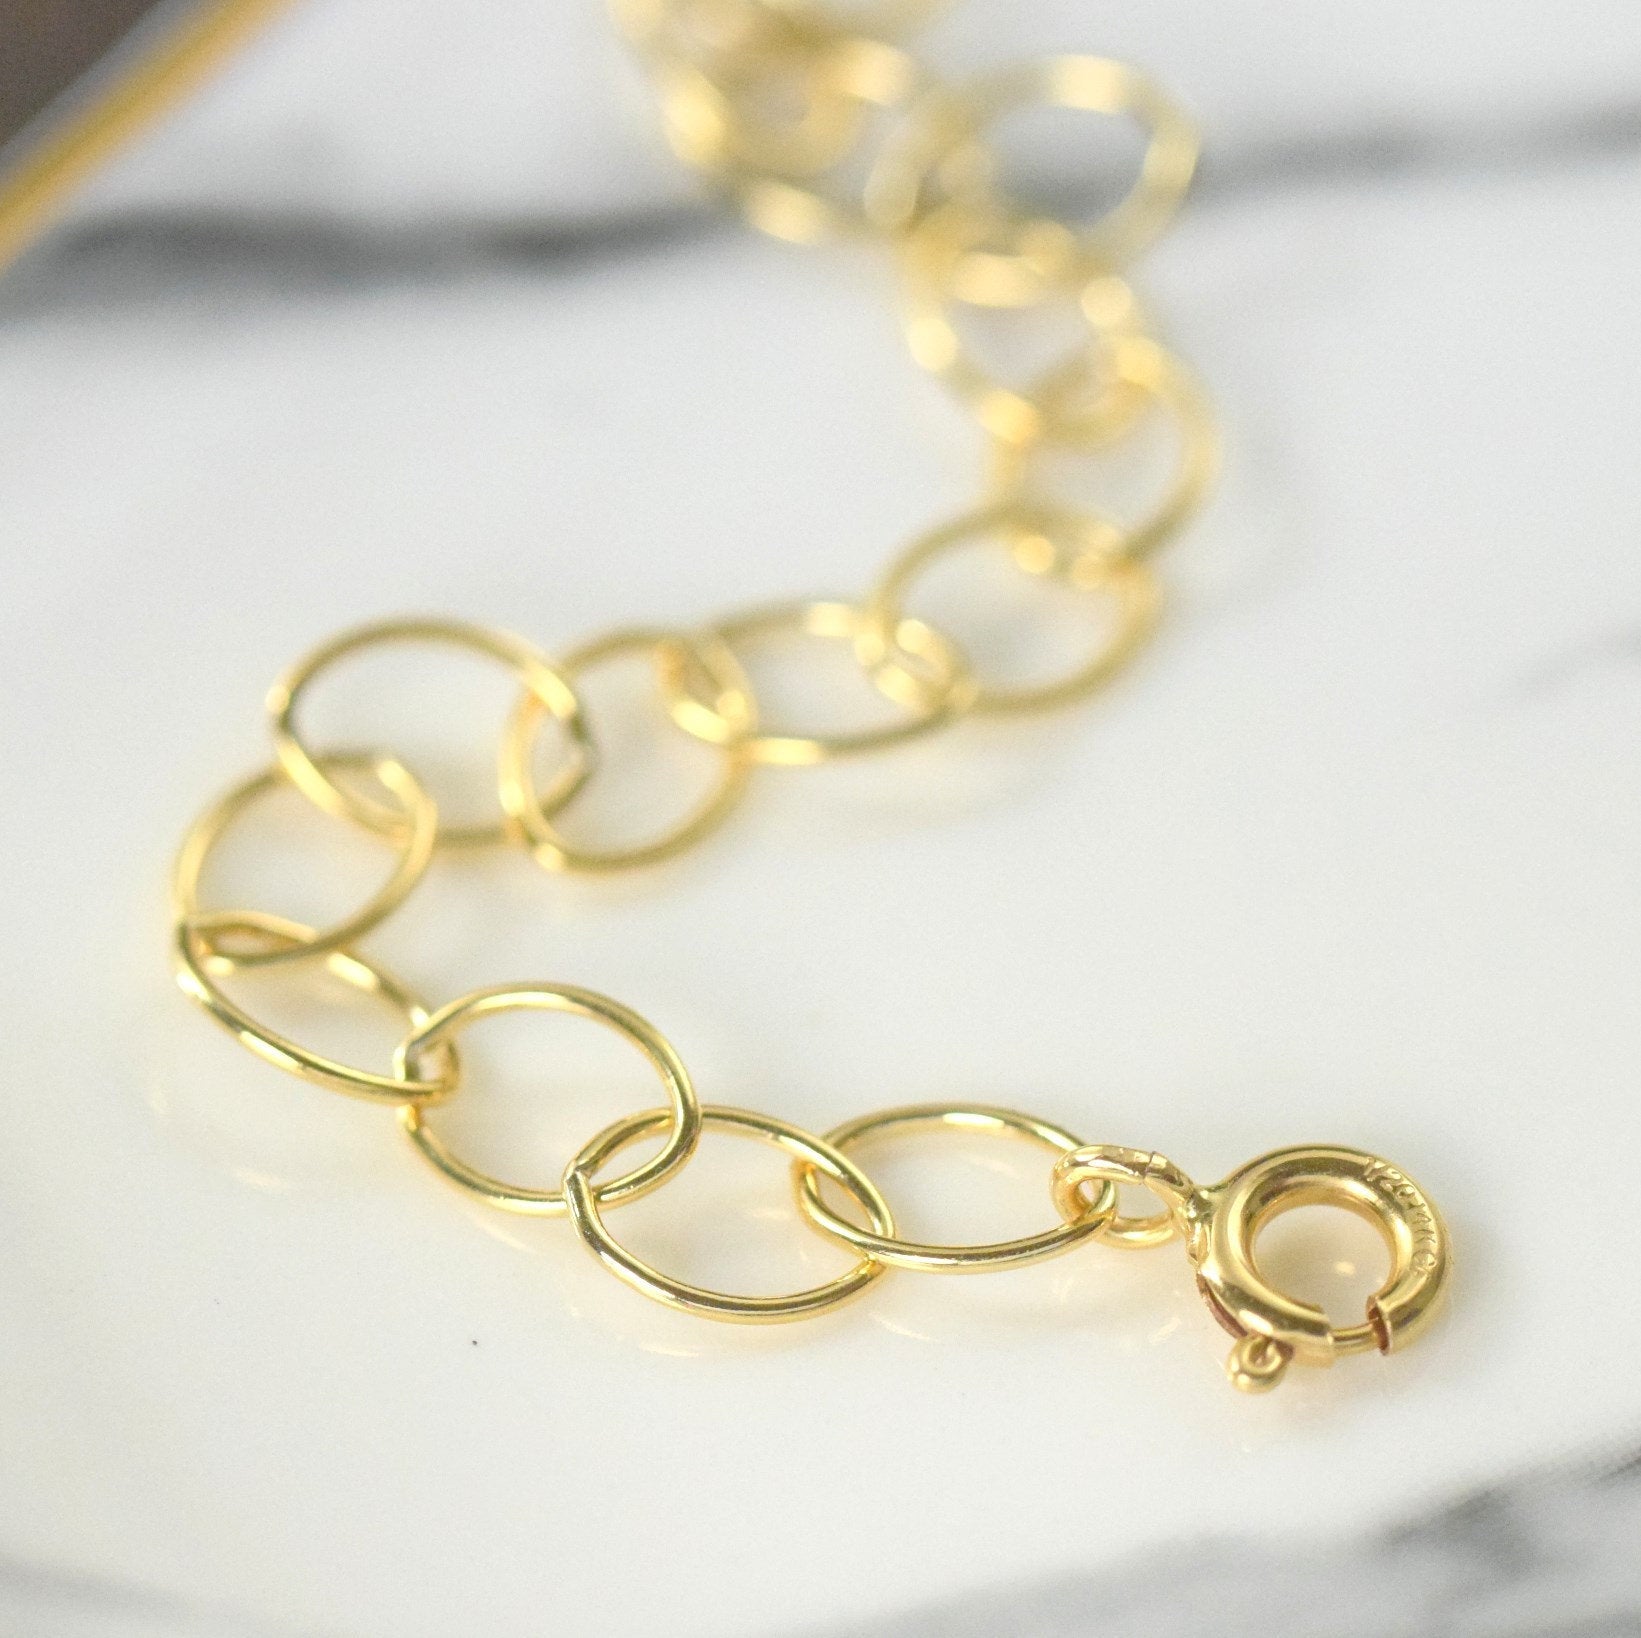 Gold filled Lever clasp adjustable necklace extender